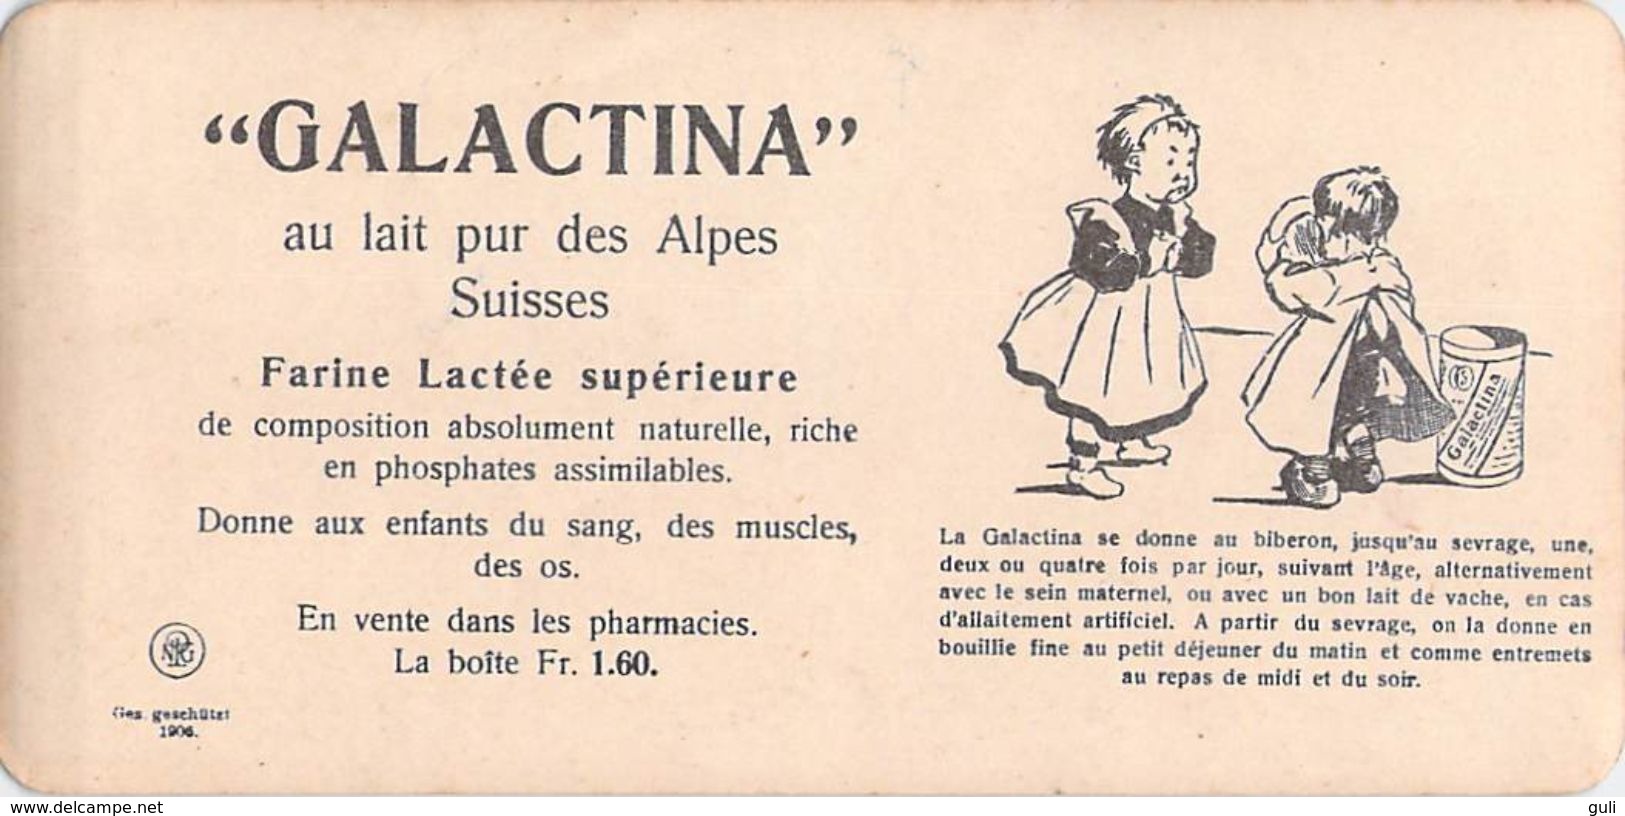 collection Stéréoscopique LOT de  5 photos stéréoscopiques GALACTINA n°5-4-3-2-1/ BERNE  Suisse/ NPG 1906